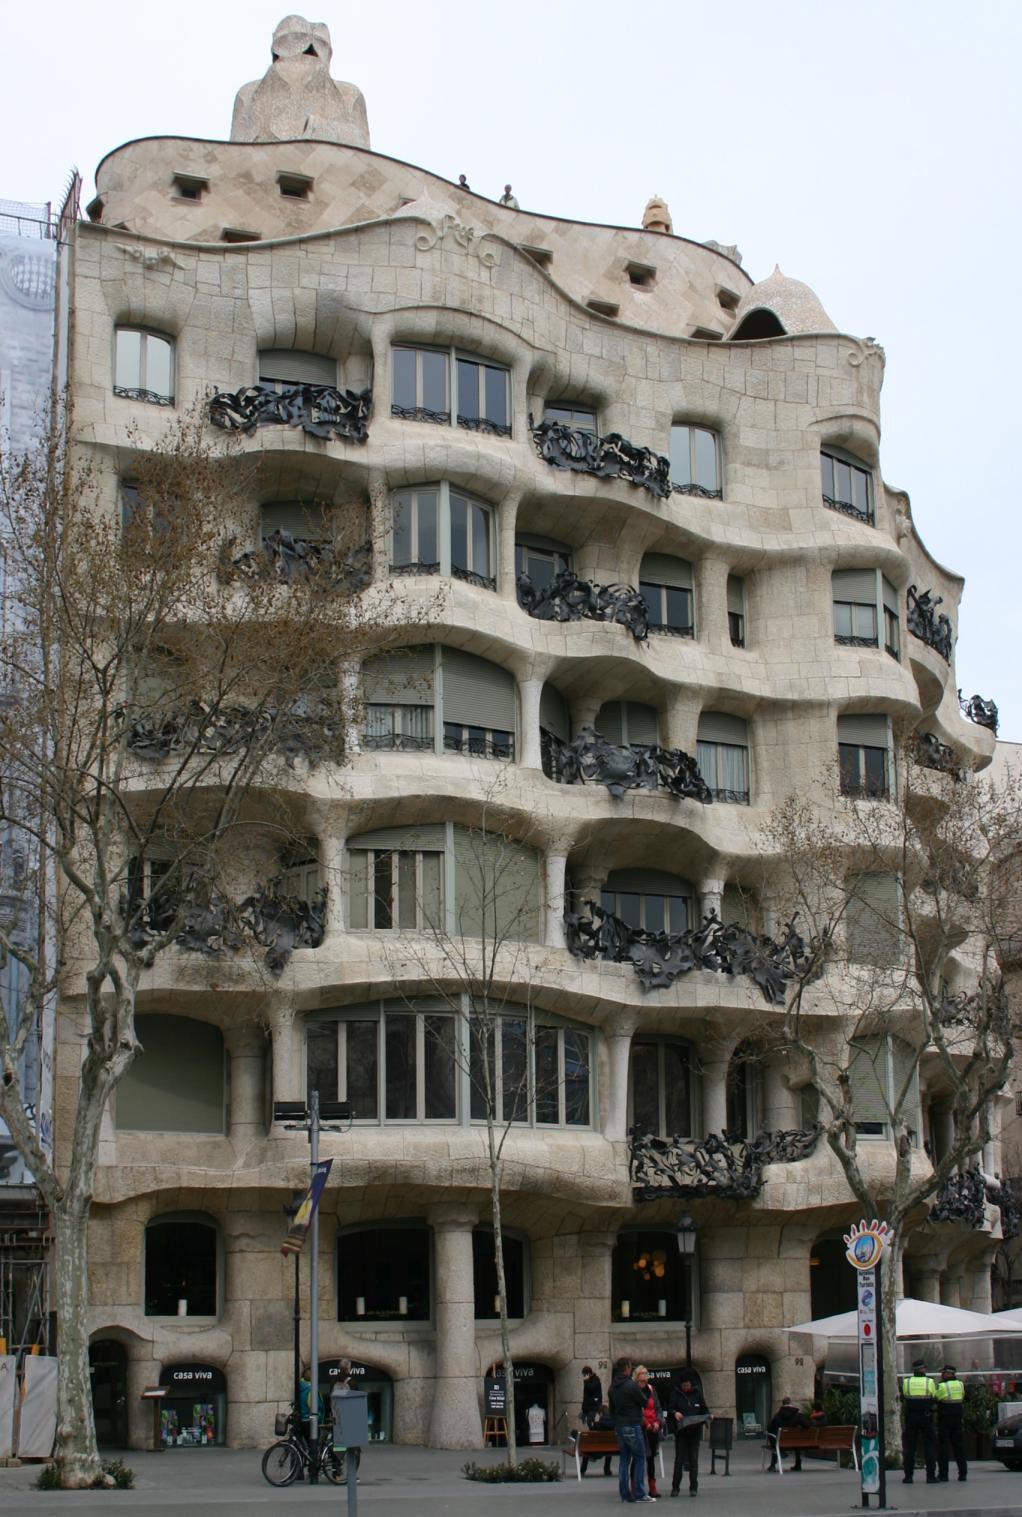 Friday 20th March, outside Gaudi's La Pedrera, Barcelona